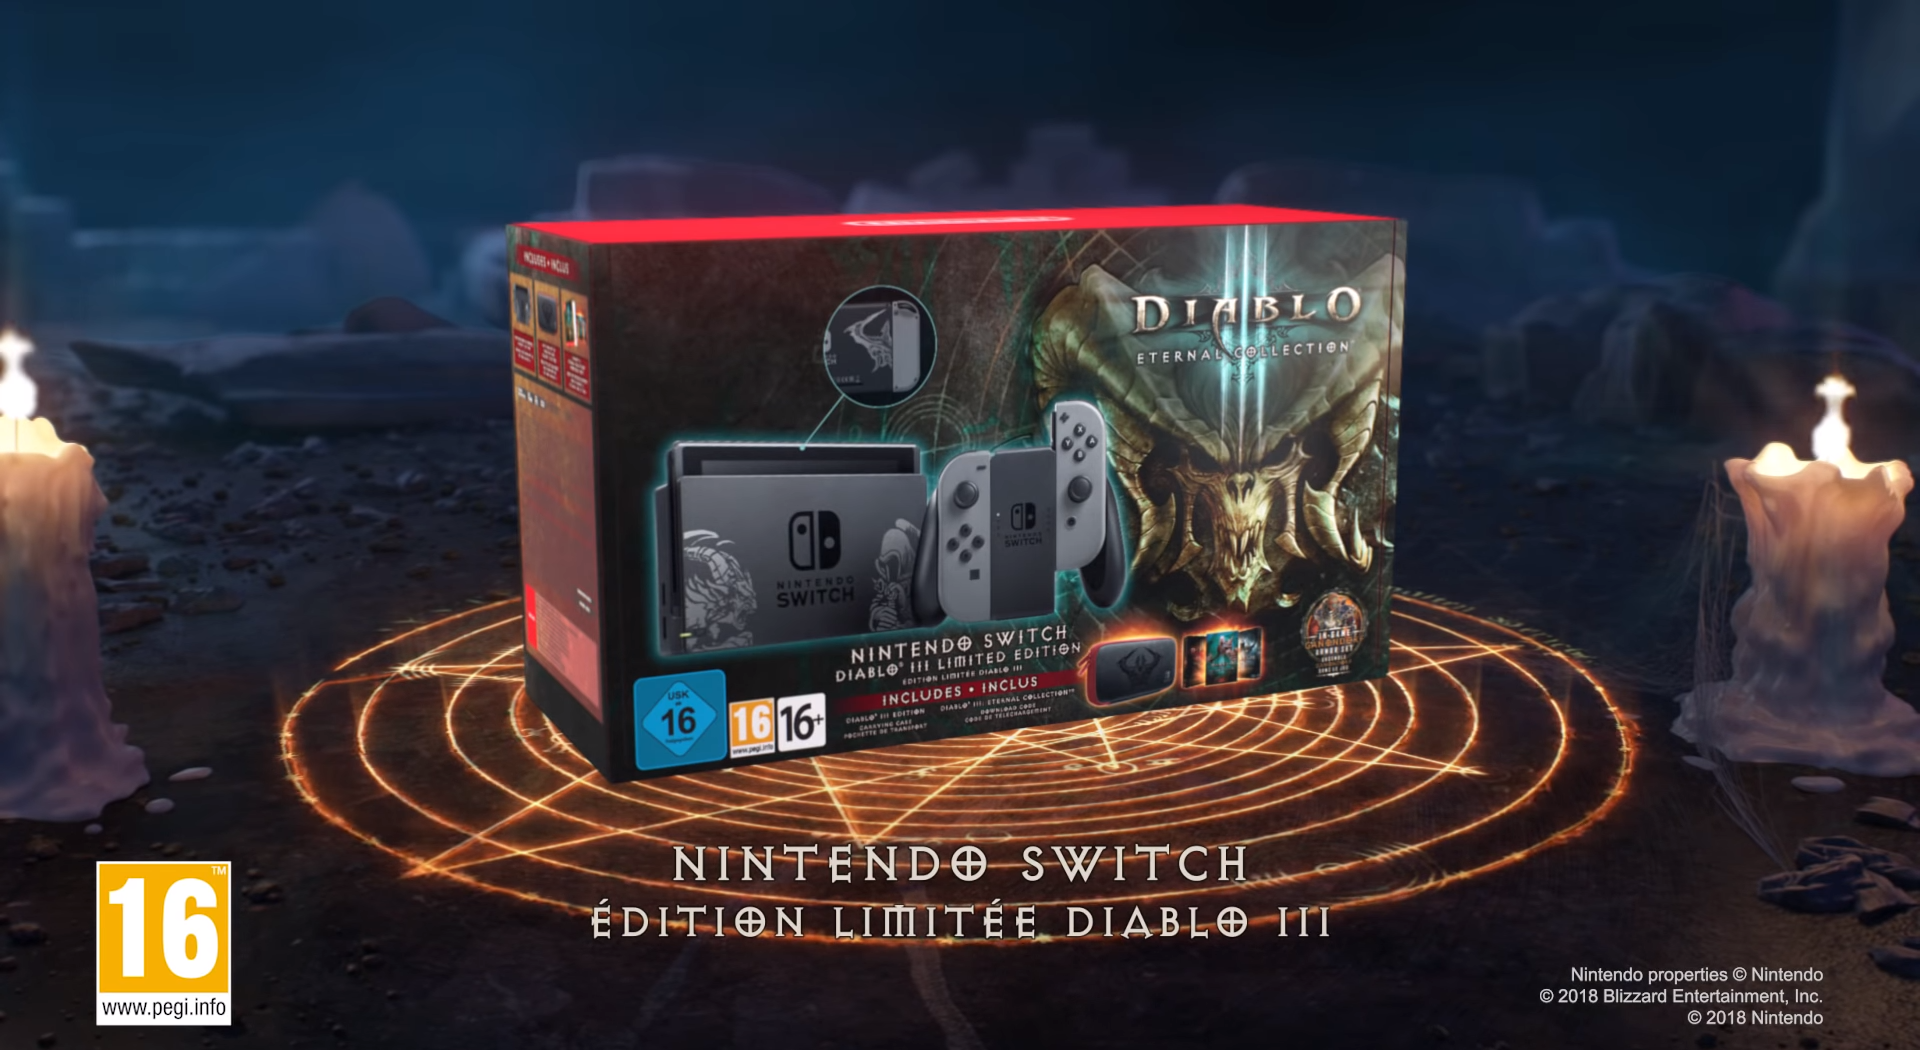 release date of diablo 3 switch